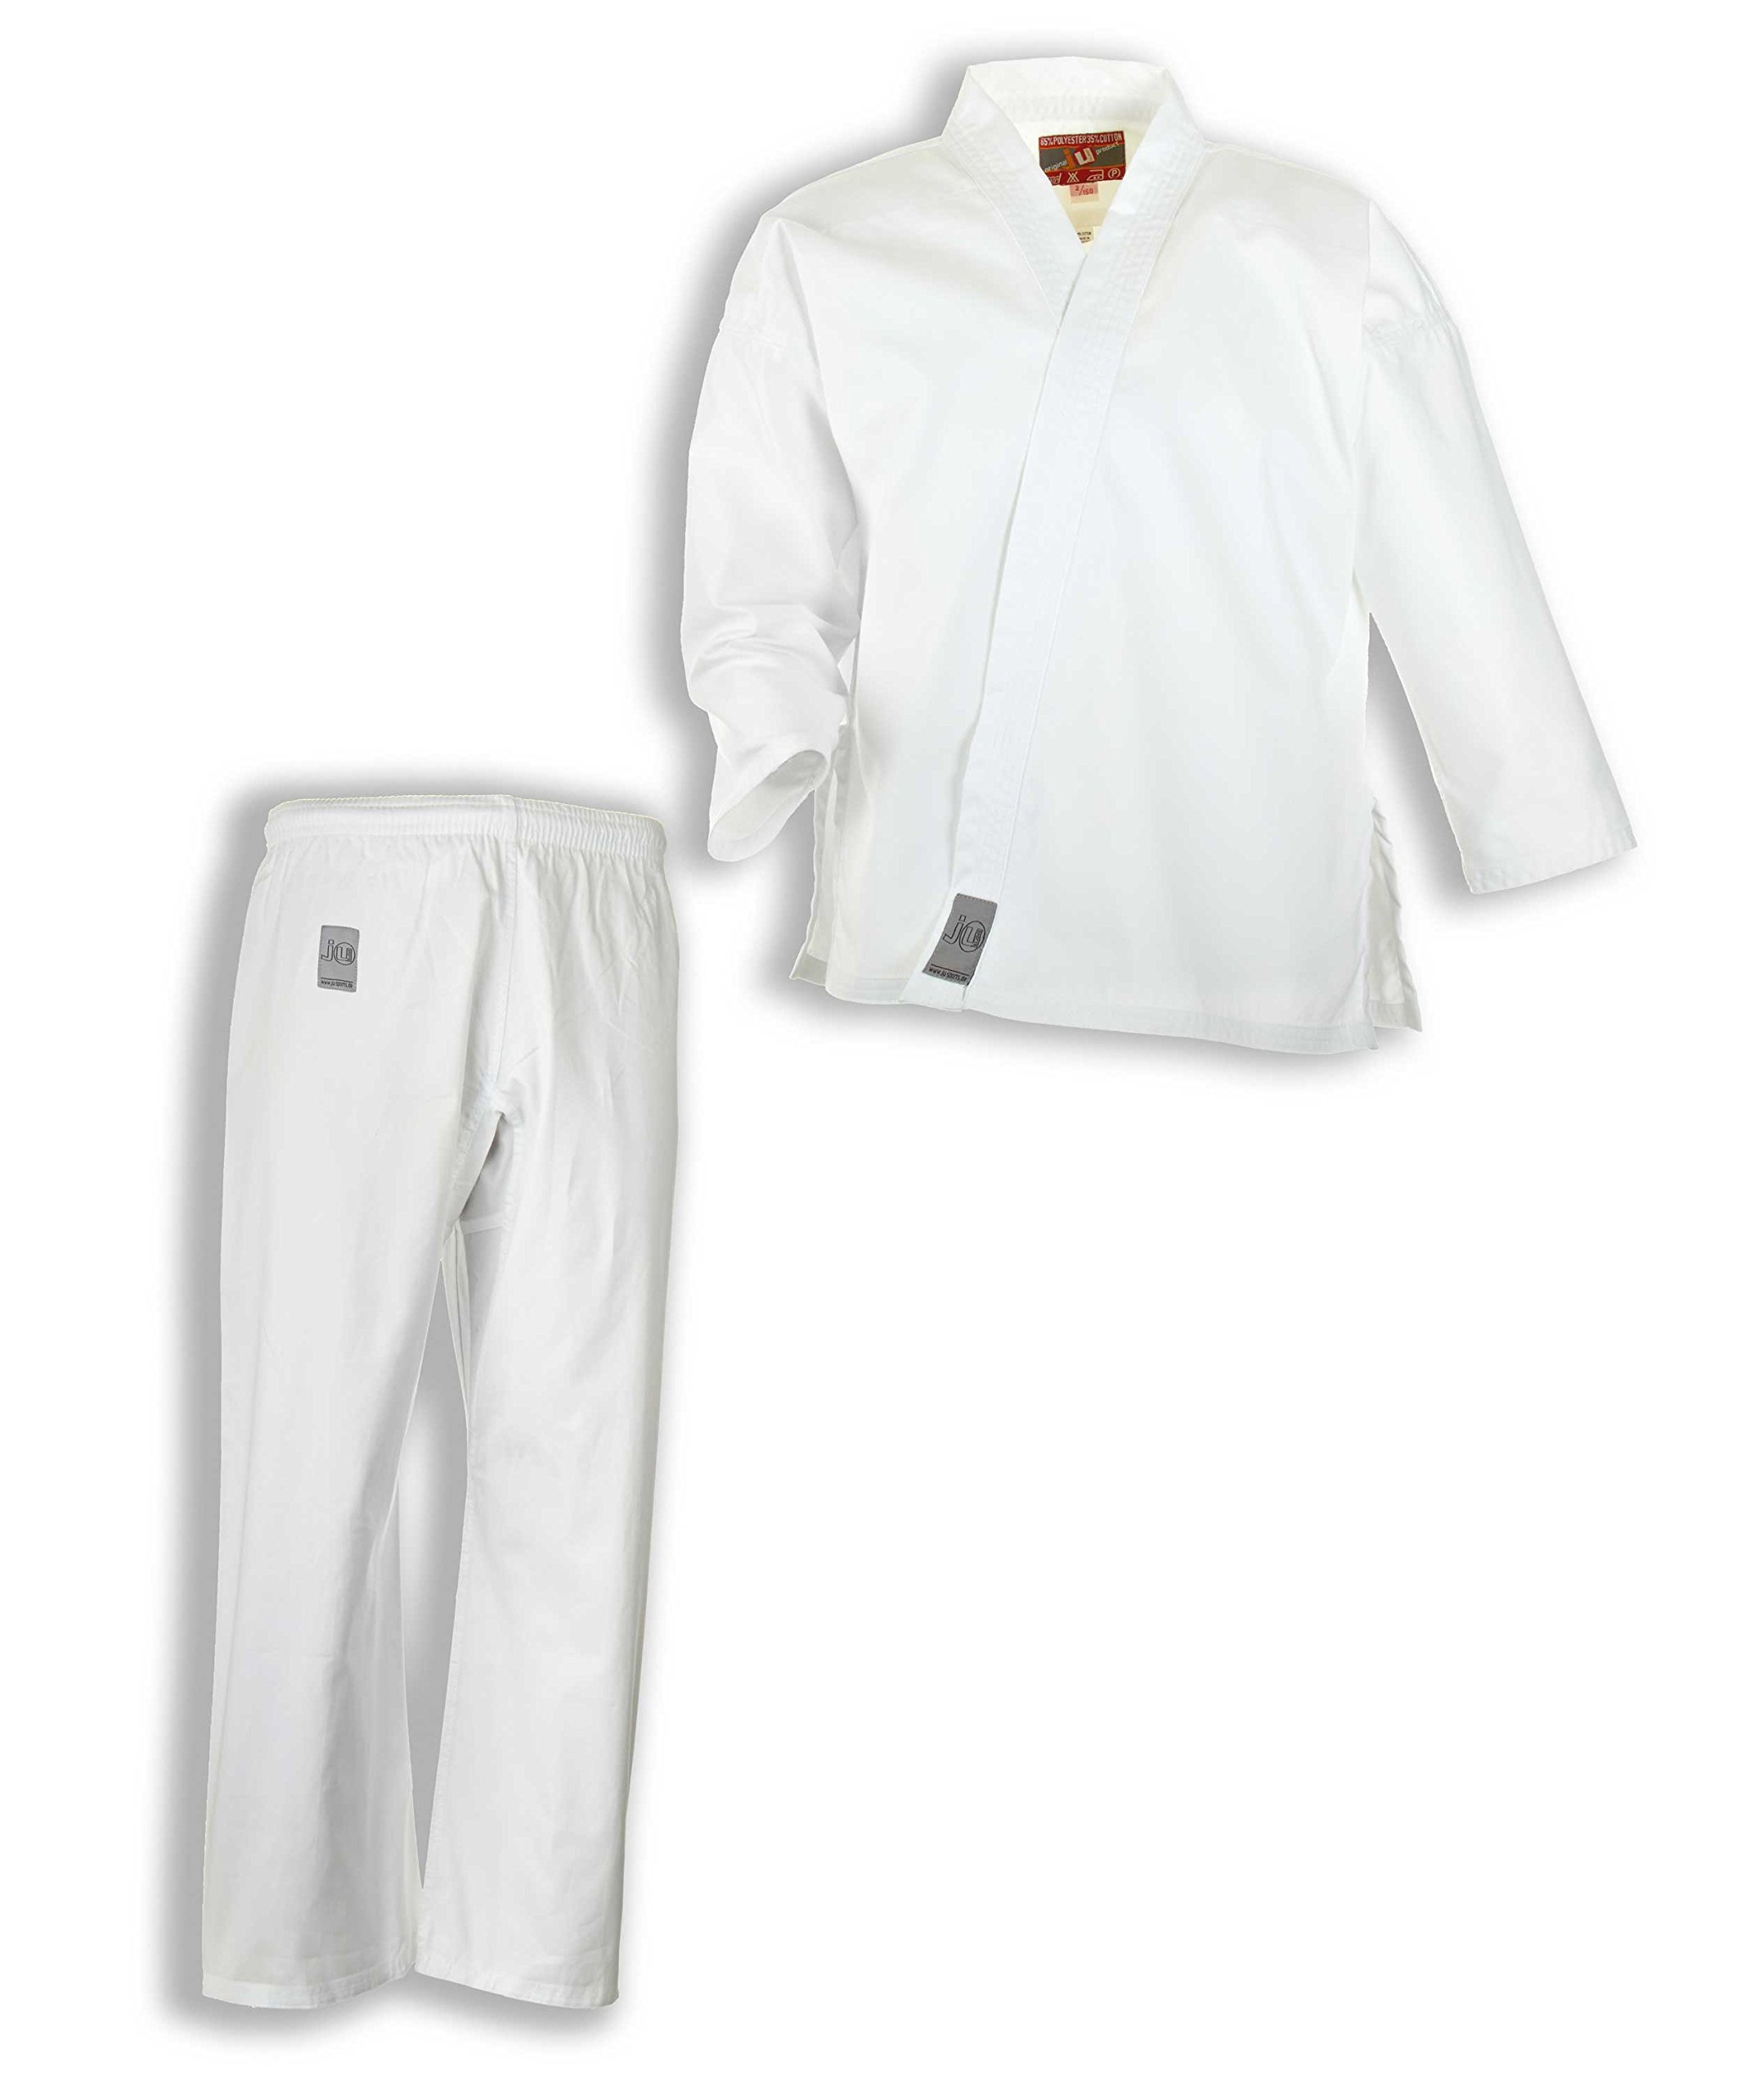 Ju-Sports Karate Anzug Bonsai Weiß 130 I Klassischer Karateanzug speziell für Kinder I Karate Kimono inkl. weißem Gürtel I Hose mit Kickzwickel & Elastikbund